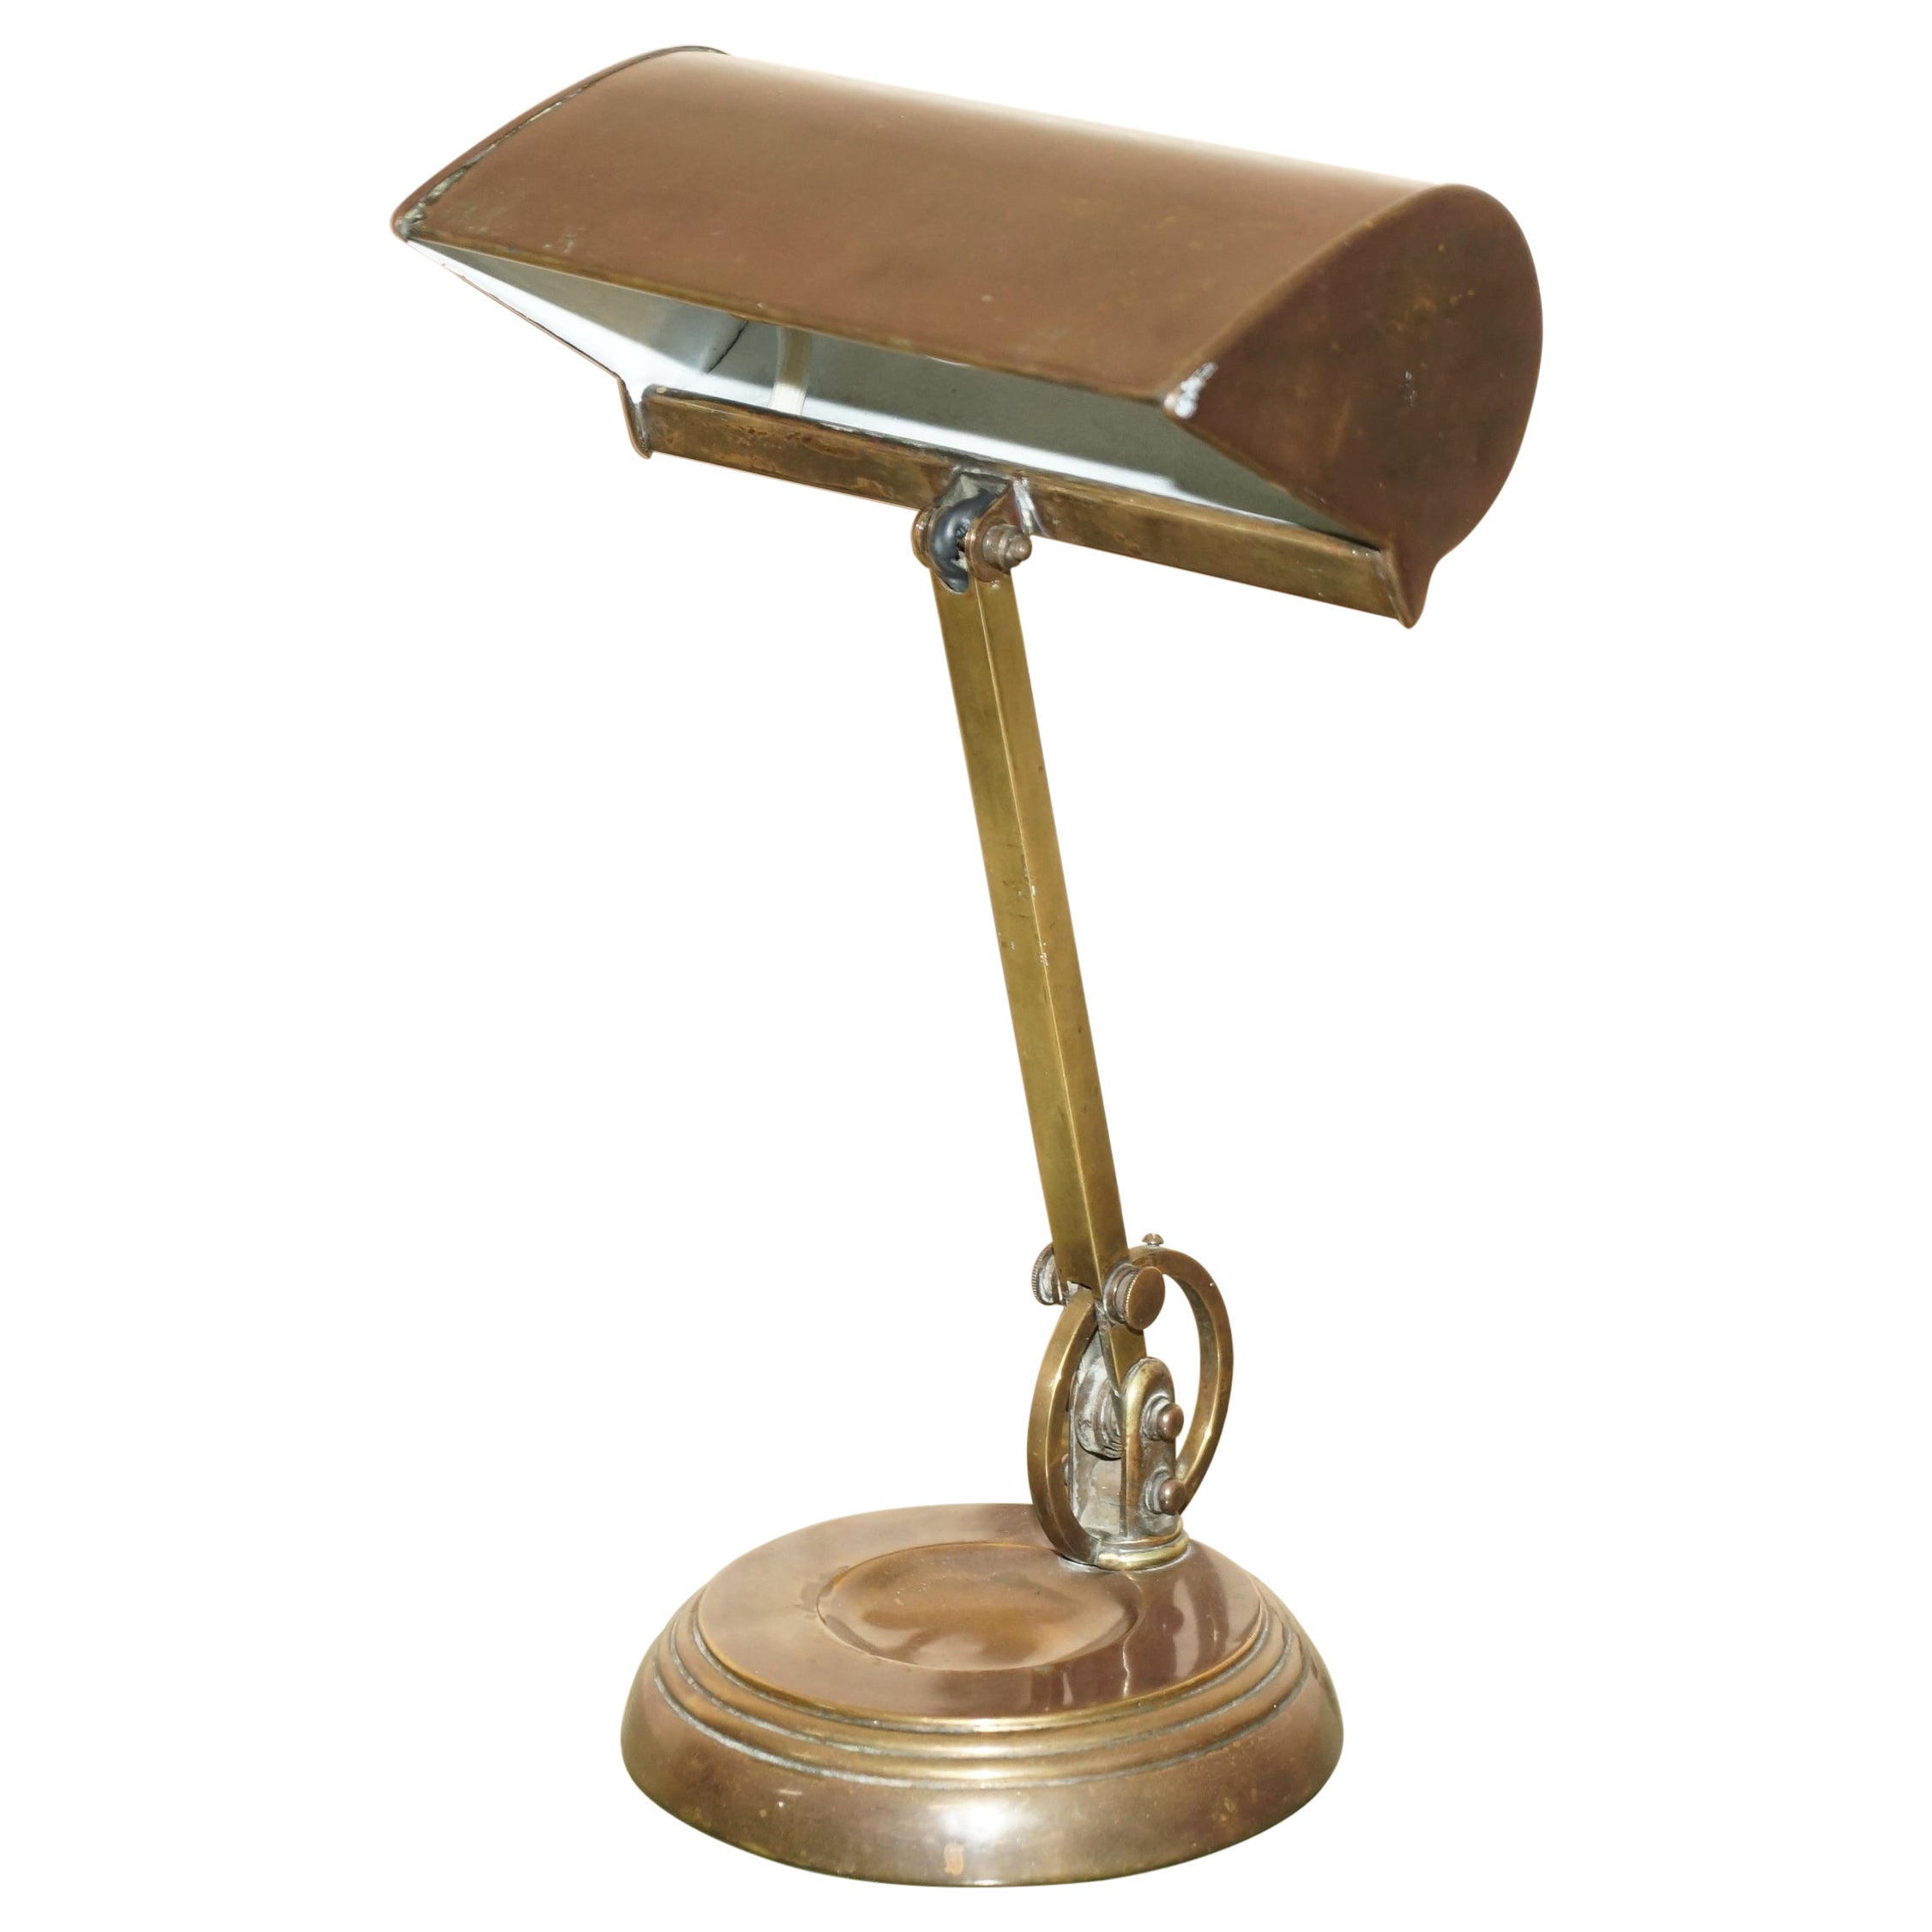 Sublime Original Bankers-Tischlampe aus Bronze, Messing und Kupfer, 1920er Jahre